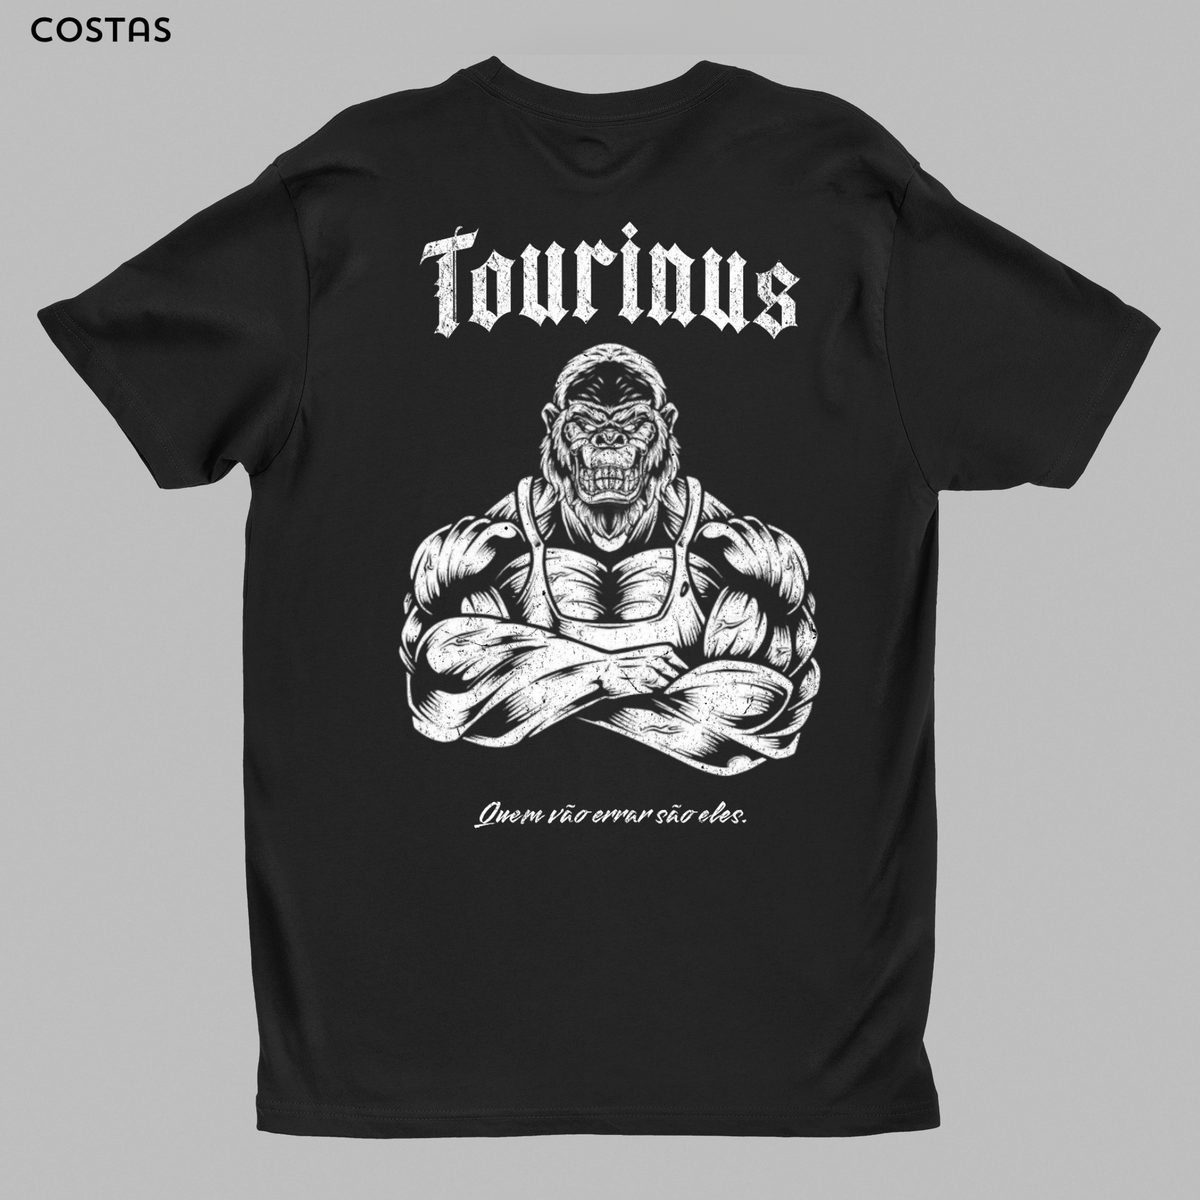 Nome do produto: Estampa Costas - Tourinus Club 